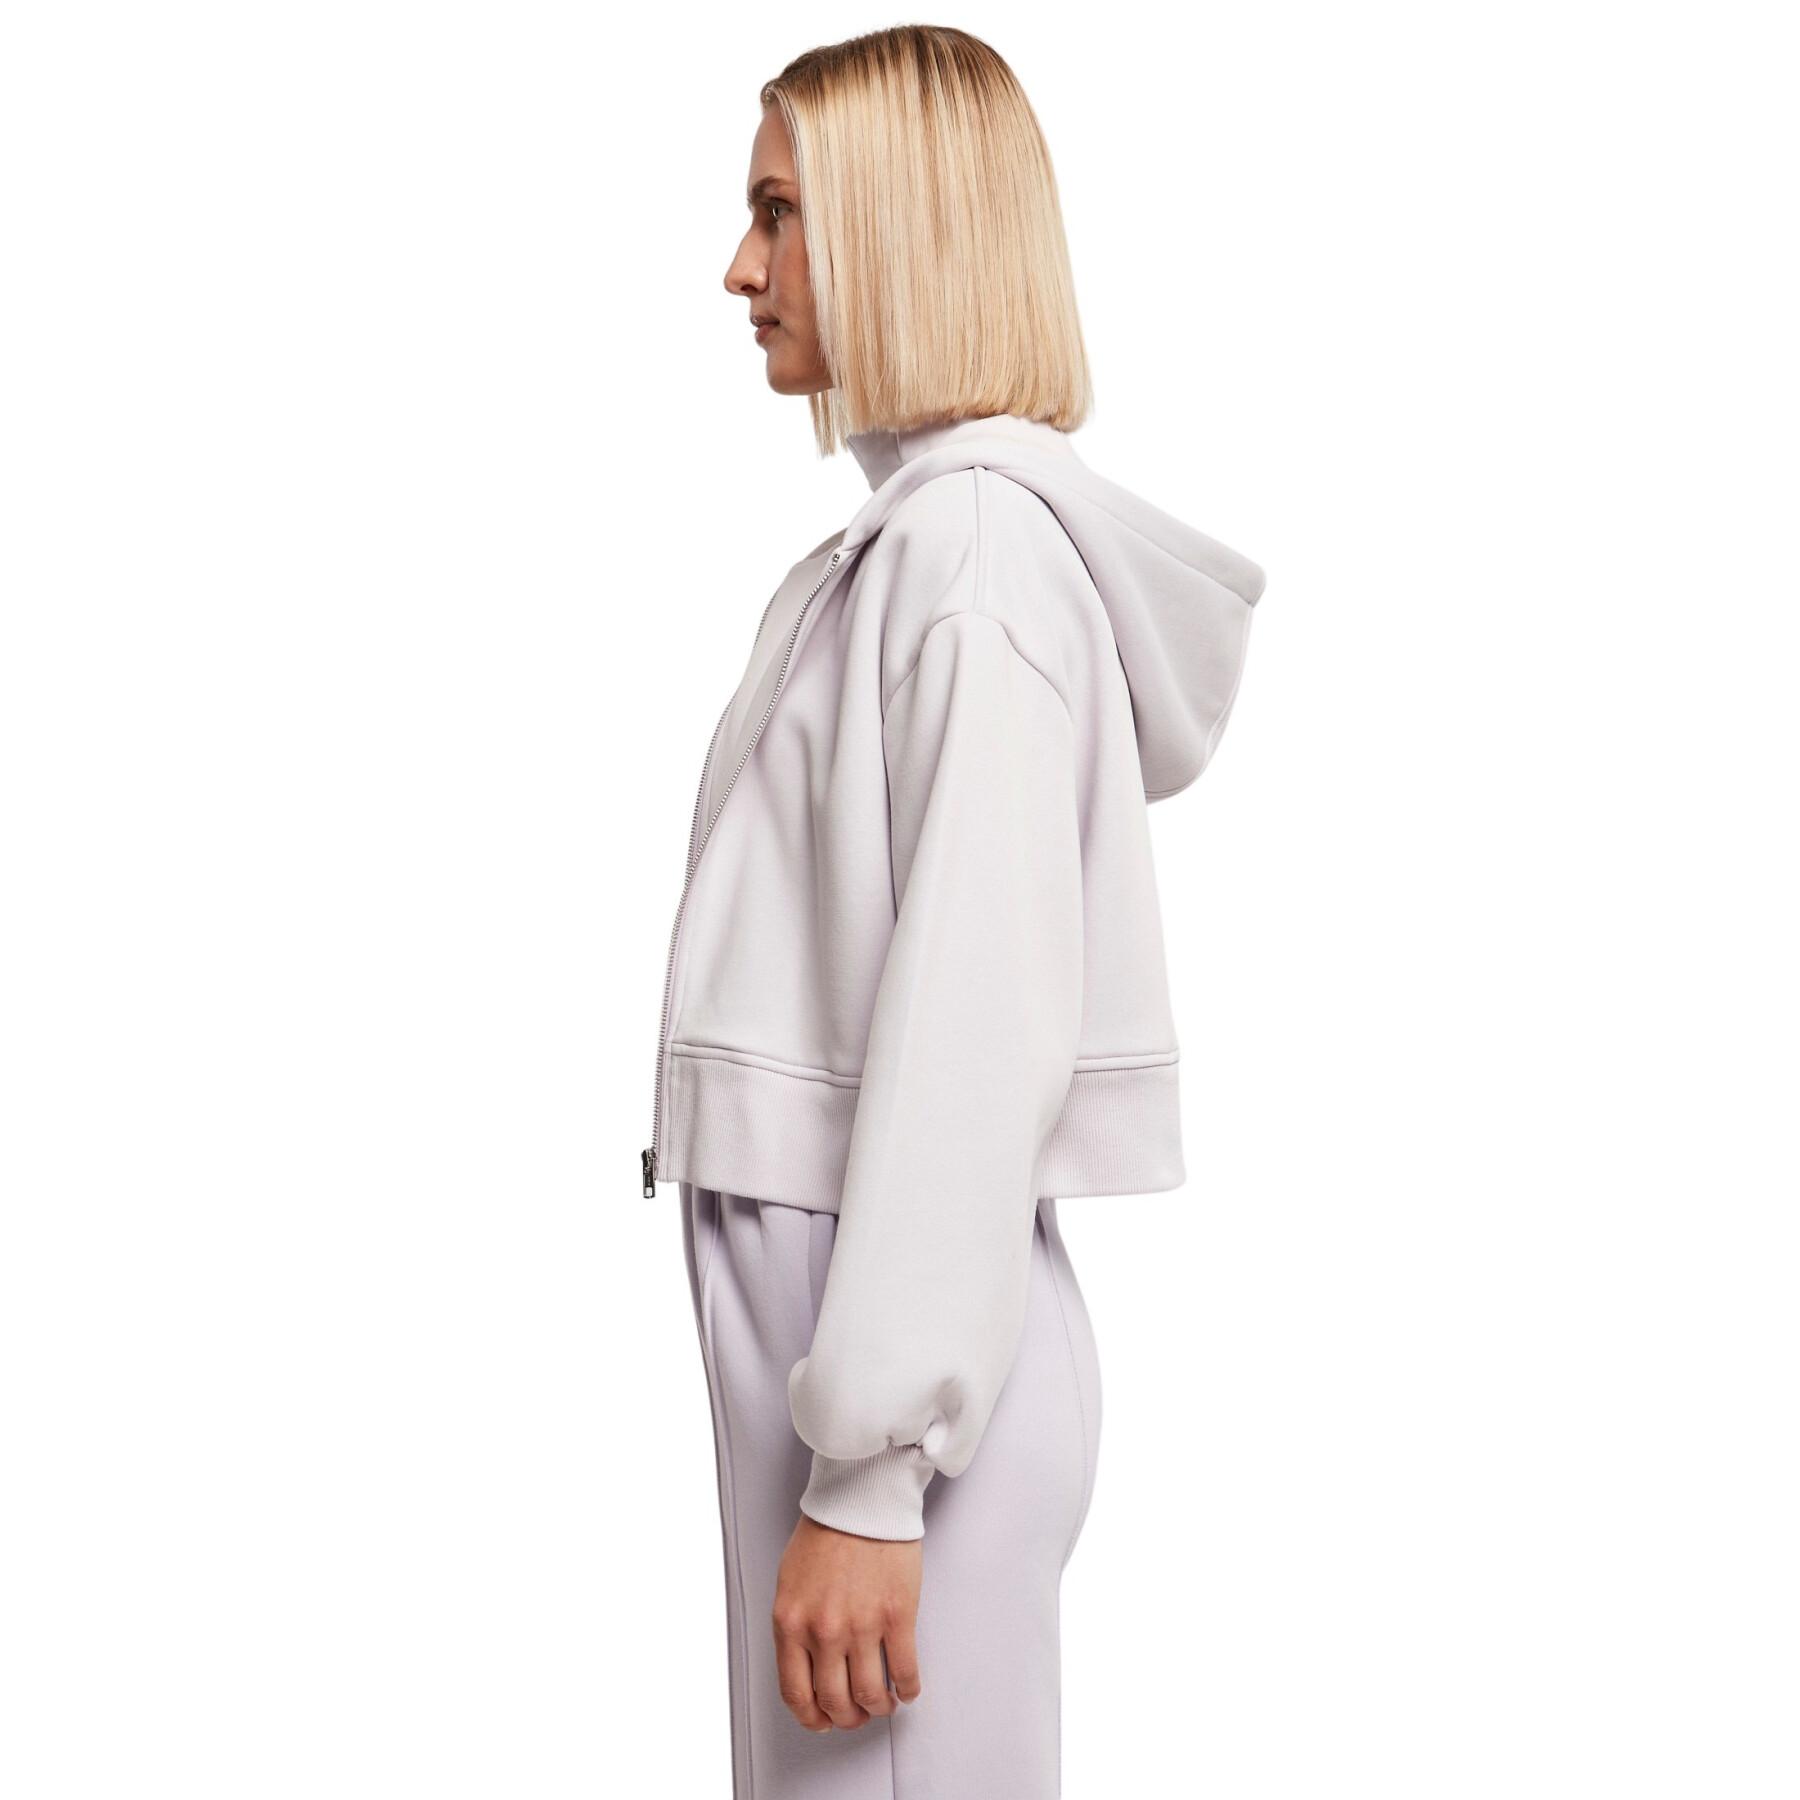 Women's short hooded zip-up sweatshirt Urban Classics Oversized